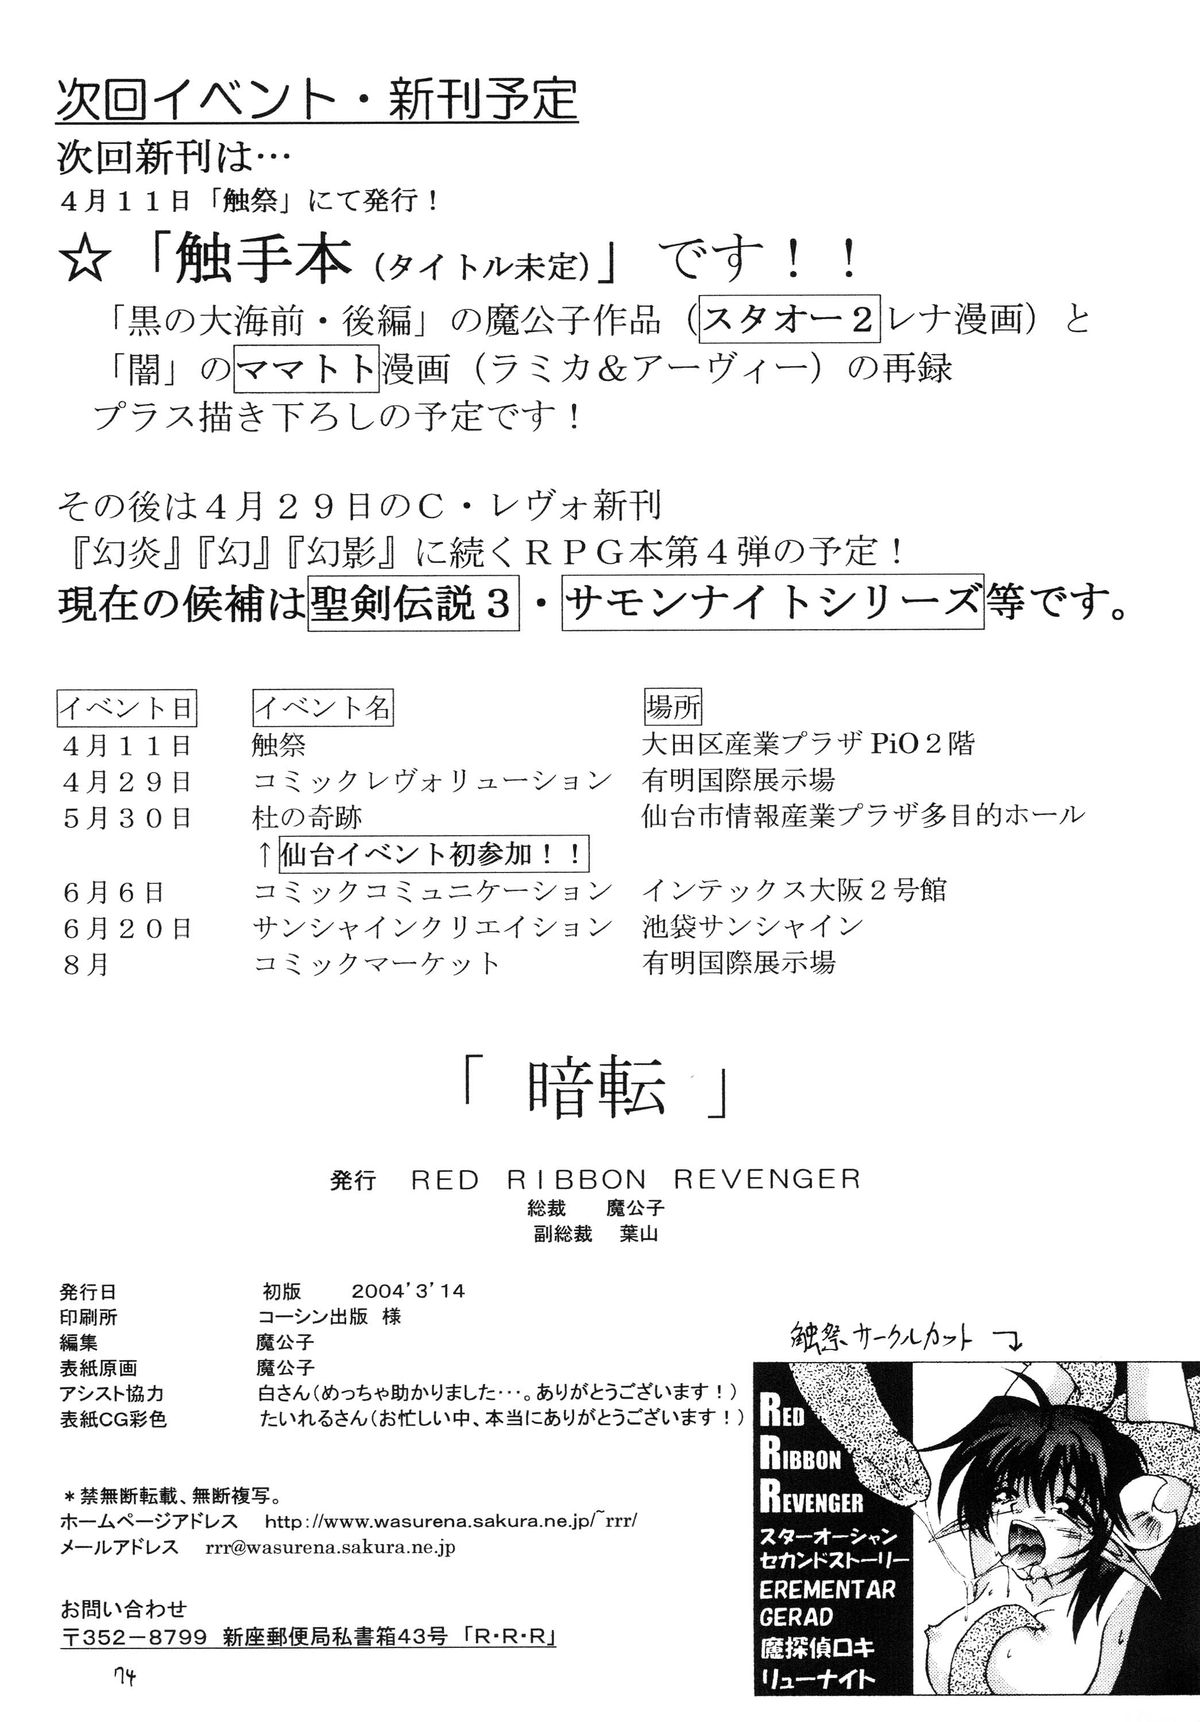 [Red Ribbon Revenger (伊吹渡、魔公子、 高遠寿茉)] R.R.R. 72nd Book - 暗転 (よろず) [DL版]